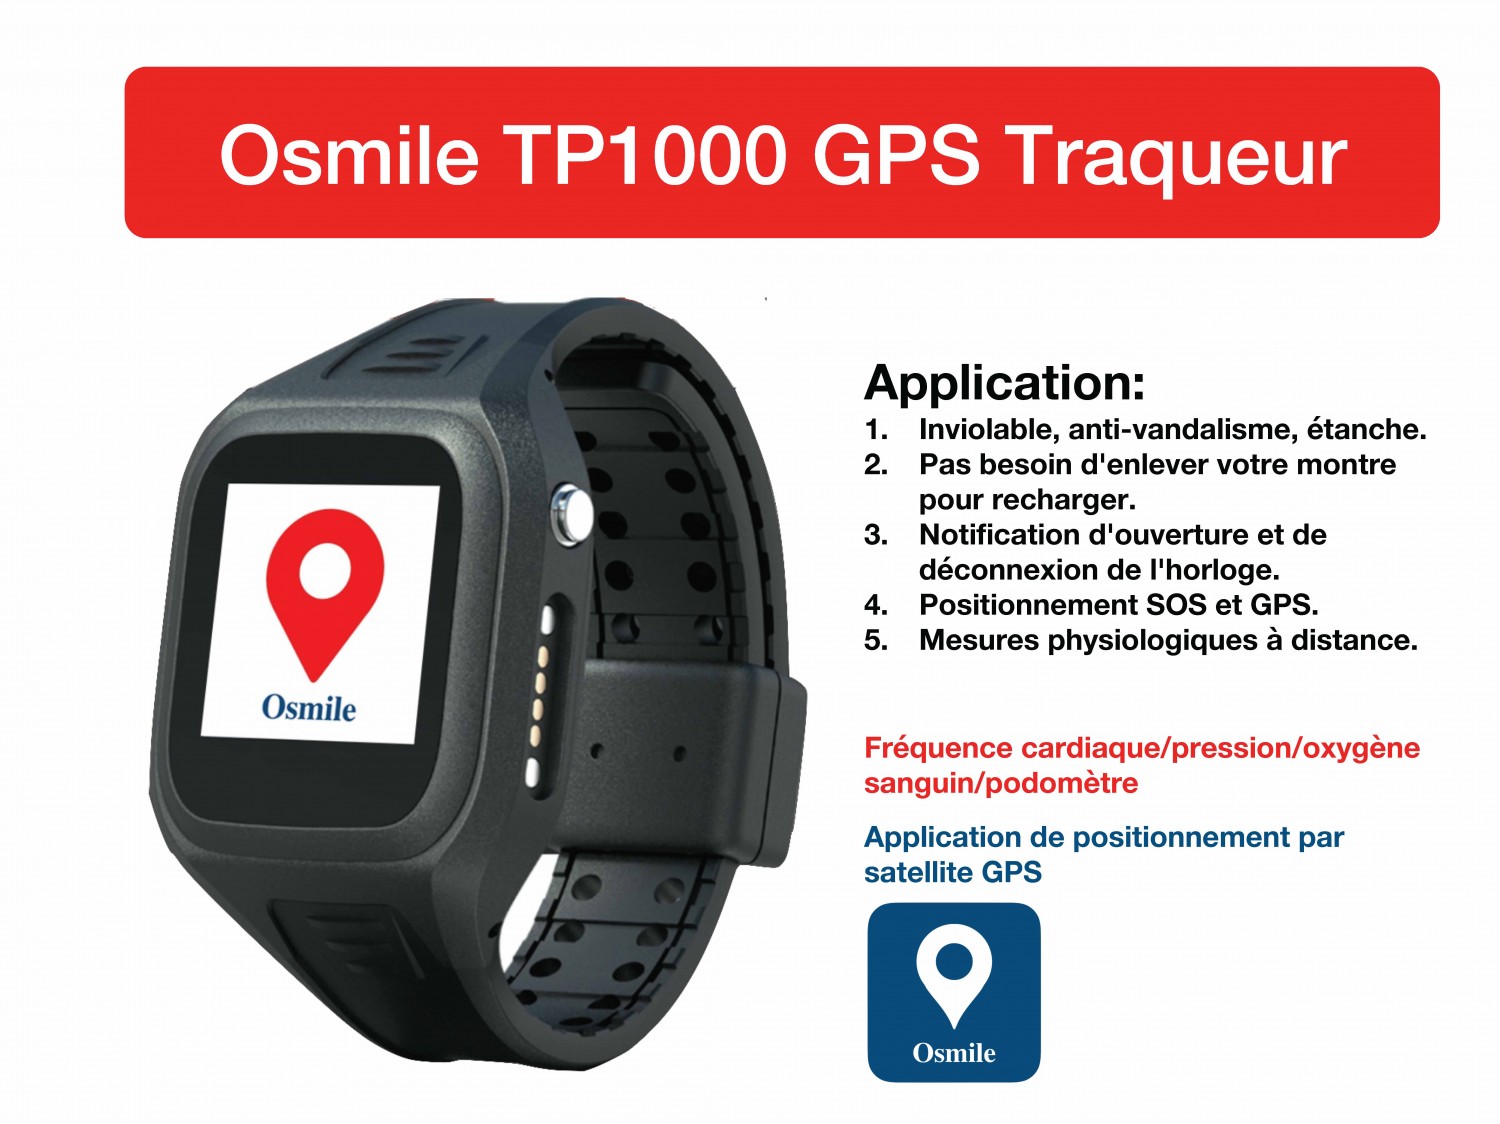 (YI) Osmile TP1000 Prisonnier / Quarantaine Montre GPS Traqueur